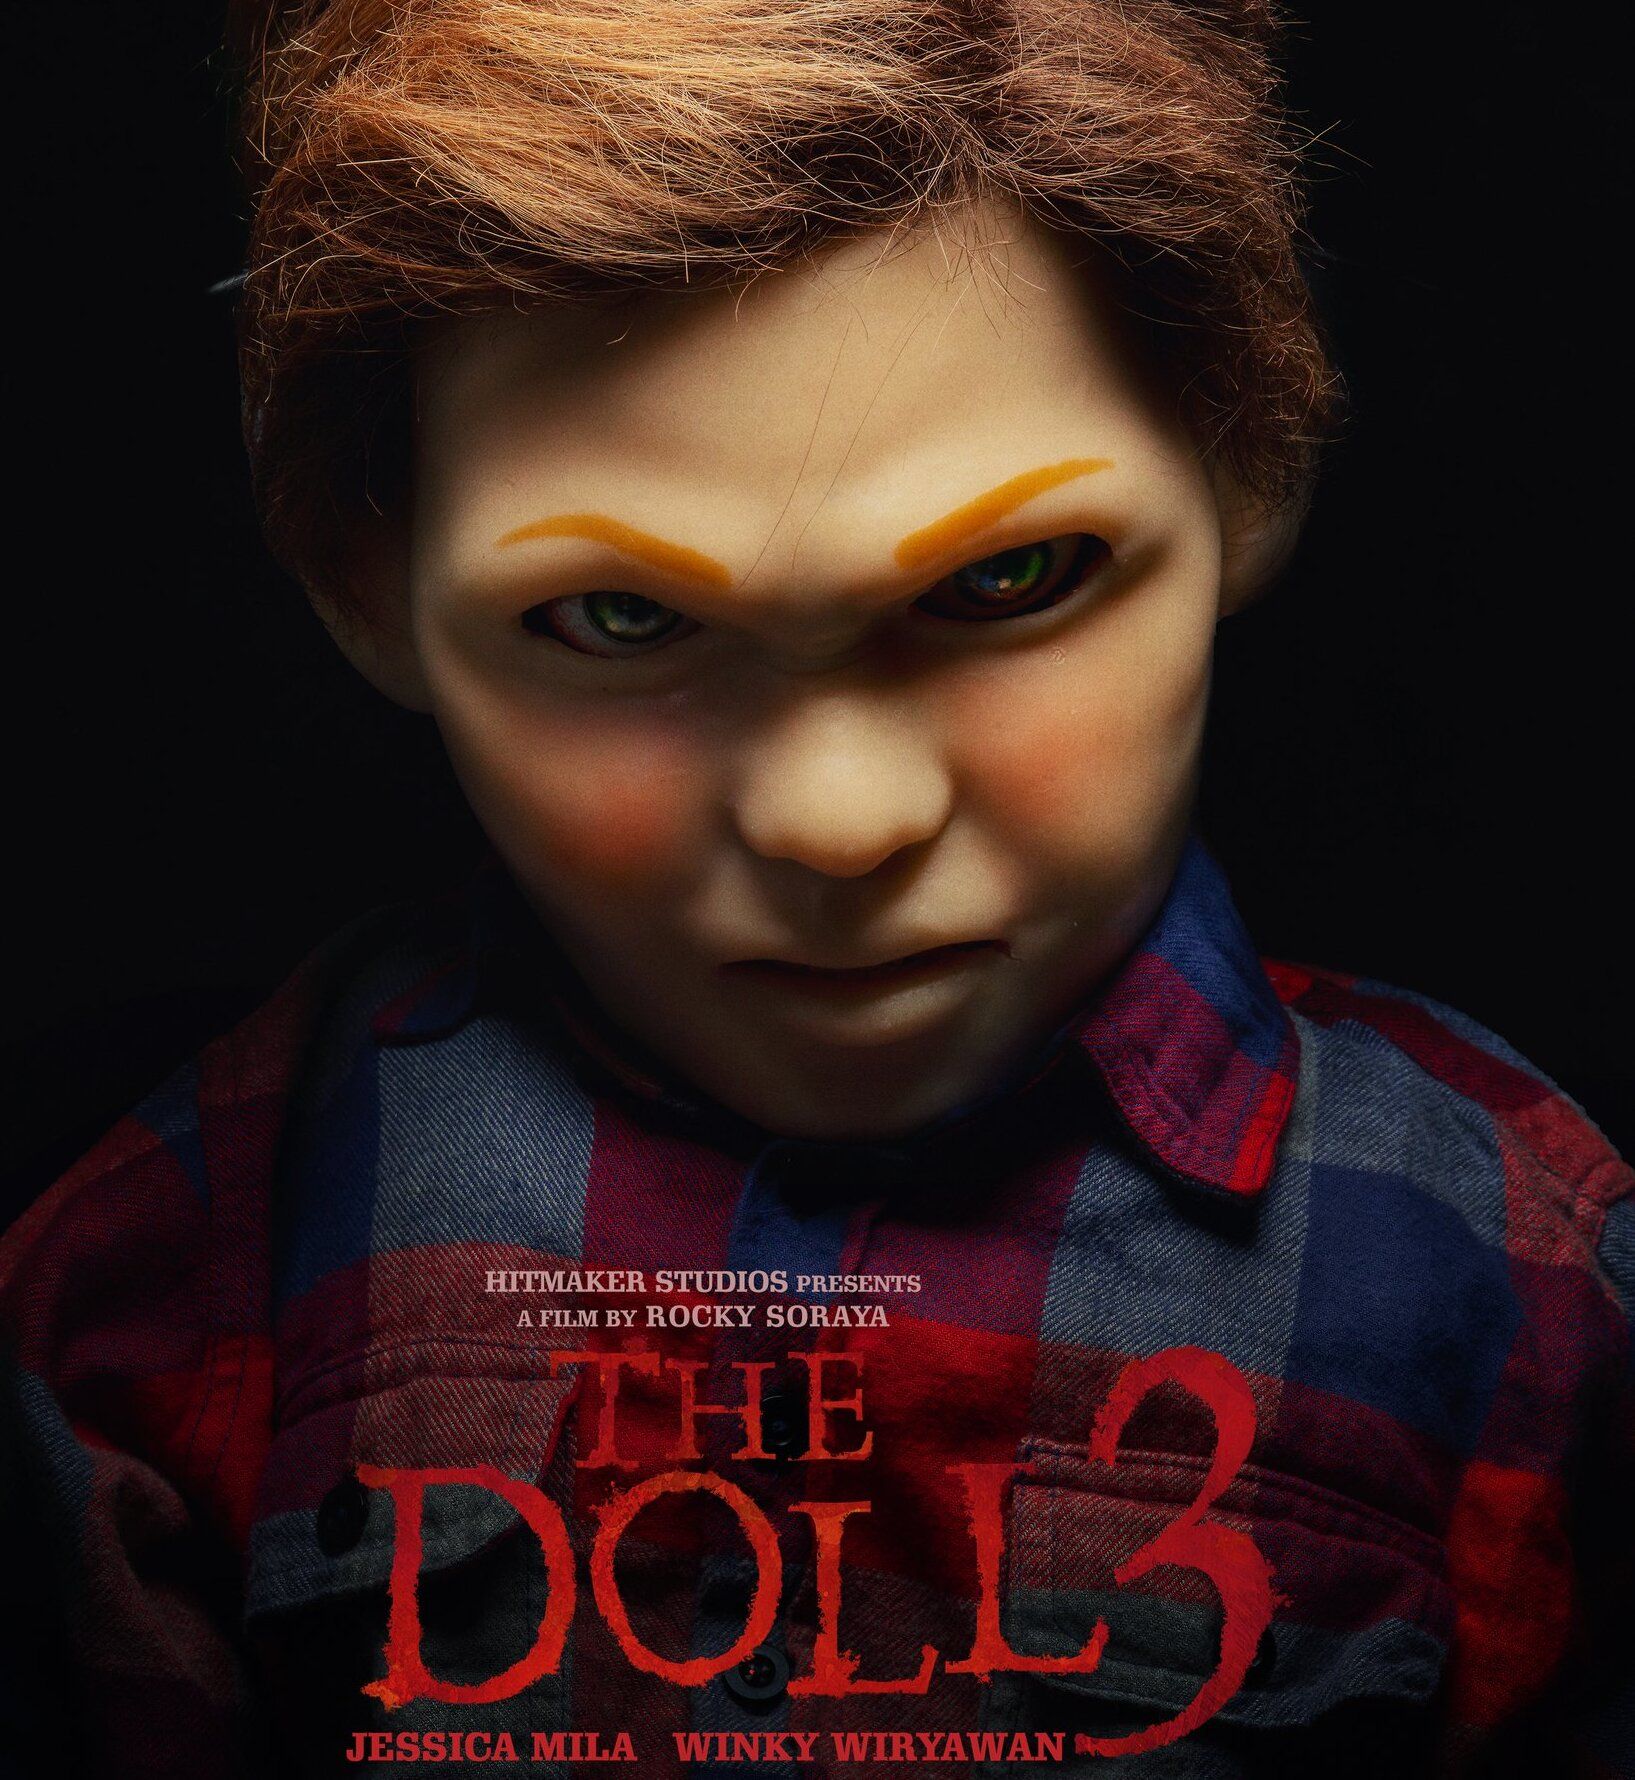 The Doll 3 jika tidak mengalami penundaan kembali dipastikan akan tayang pada Mei 2022 di Bioskop  se-Indonesia.